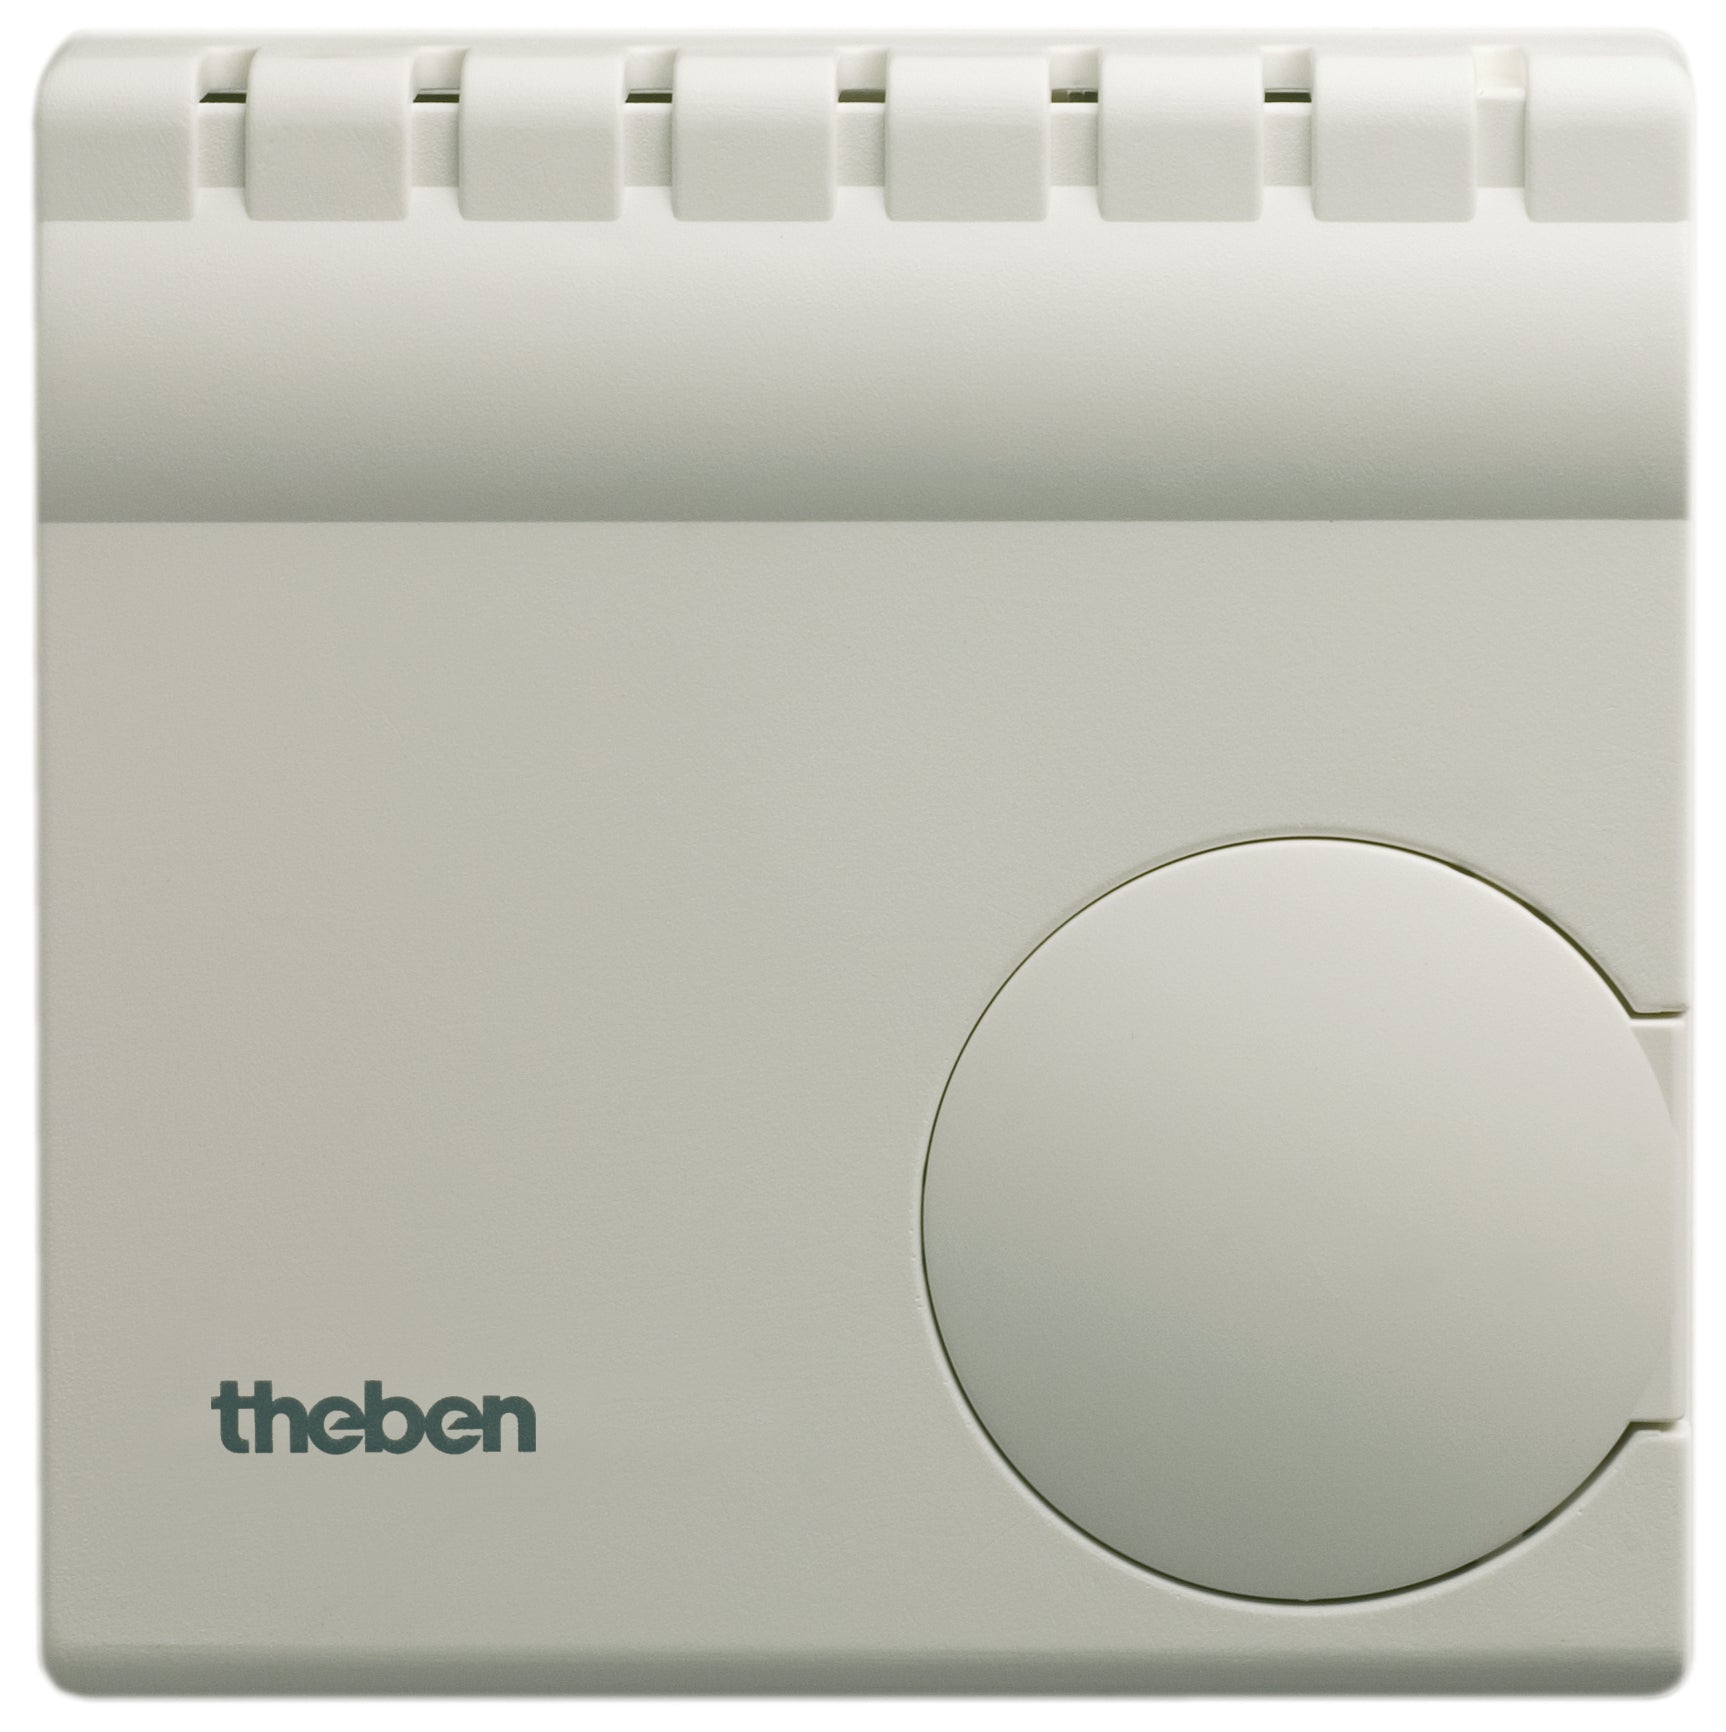 THEBEN Raum-Thermostate mit Inneneinstellung und Anschluss für Temperaturabs.